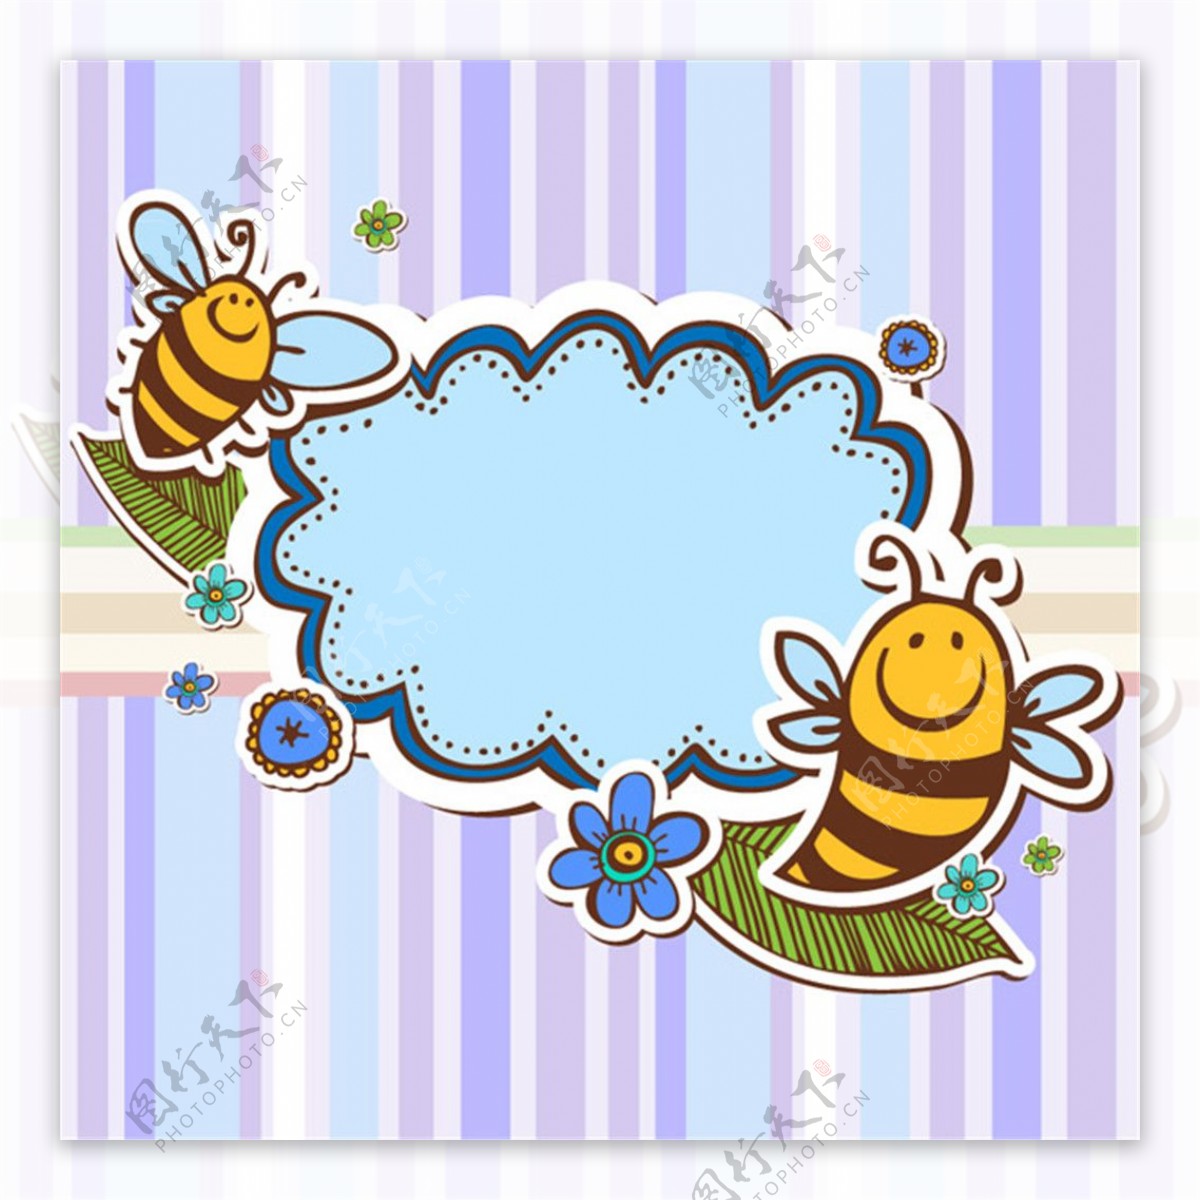 蜜蜂剪贴语言框